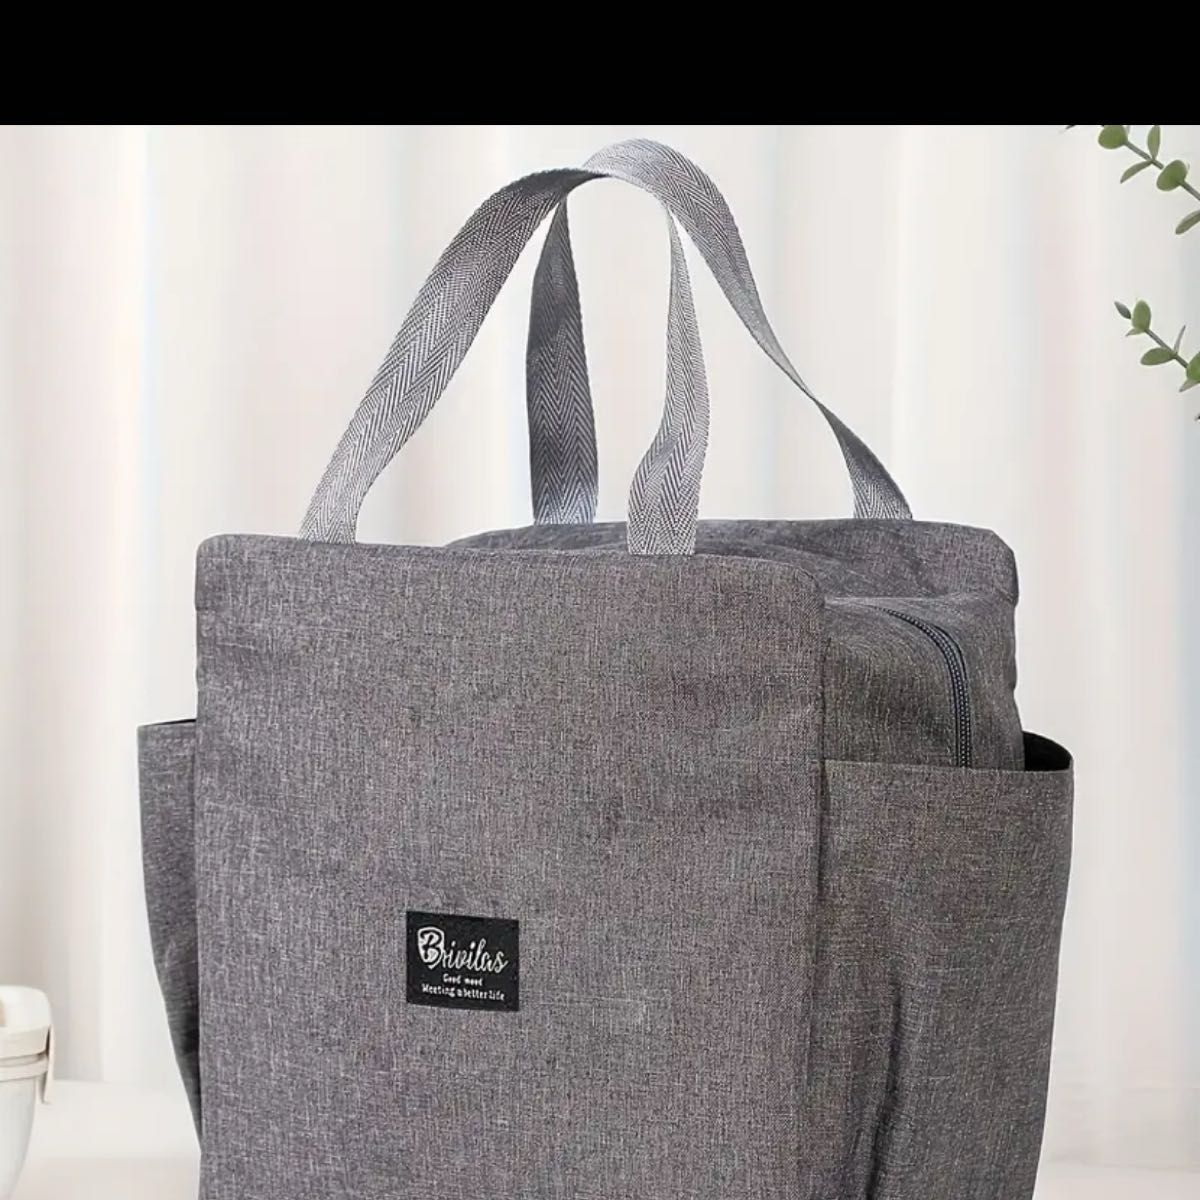 ランチバッグは、学校のシーズン、外出先の旅行用の二重層のピクニックバッグ、食事の断熱ショッピングバッグギフトバッグに適しています。